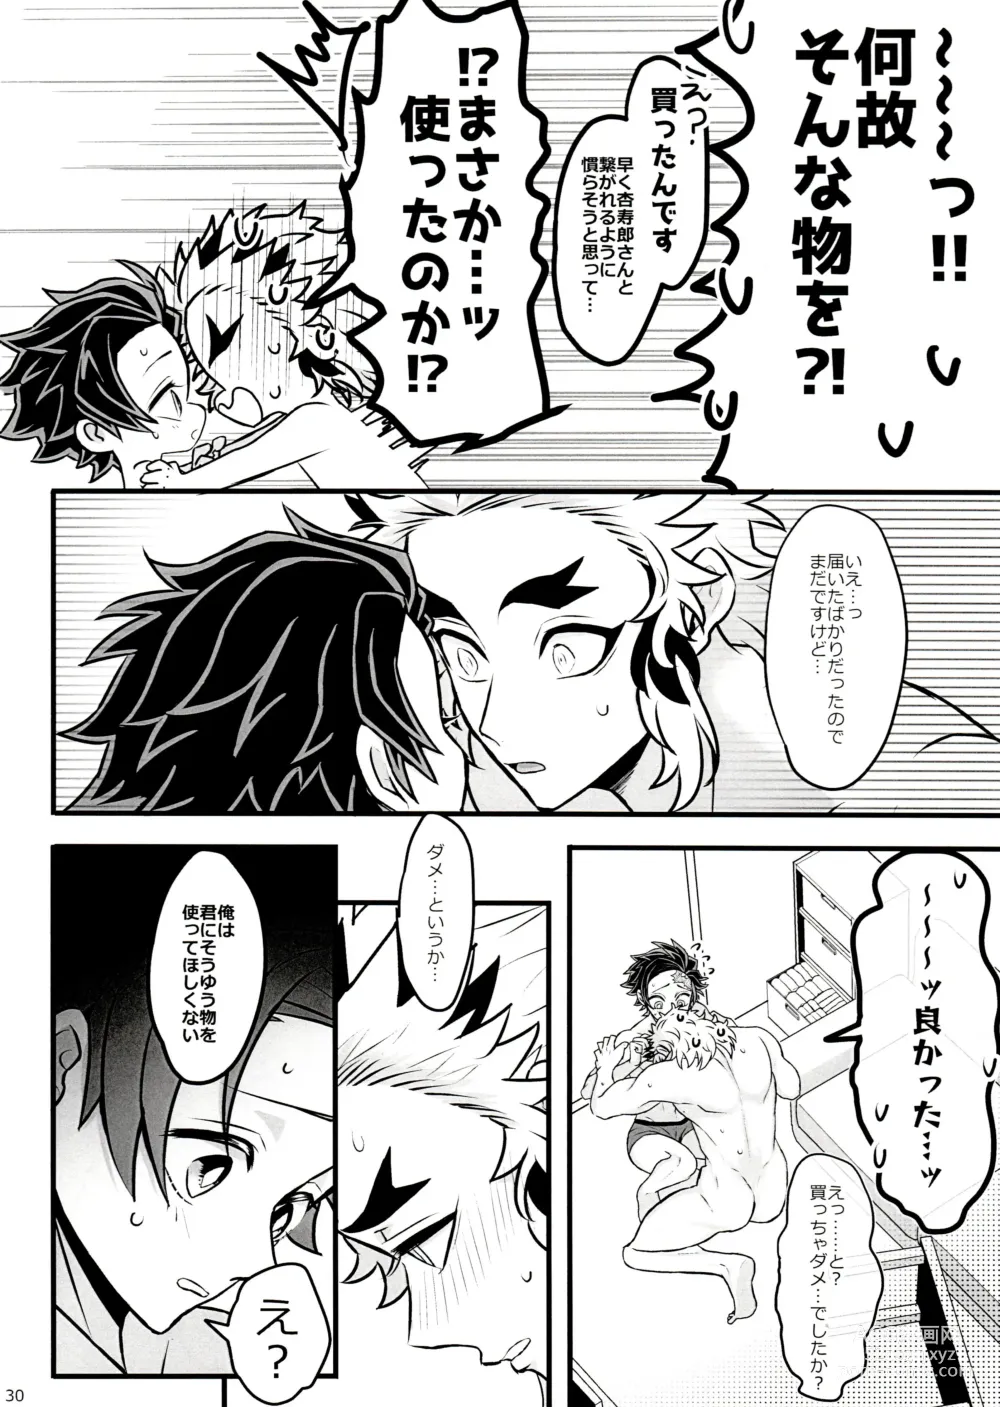 Page 30 of doujinshi Ore Seitsuu